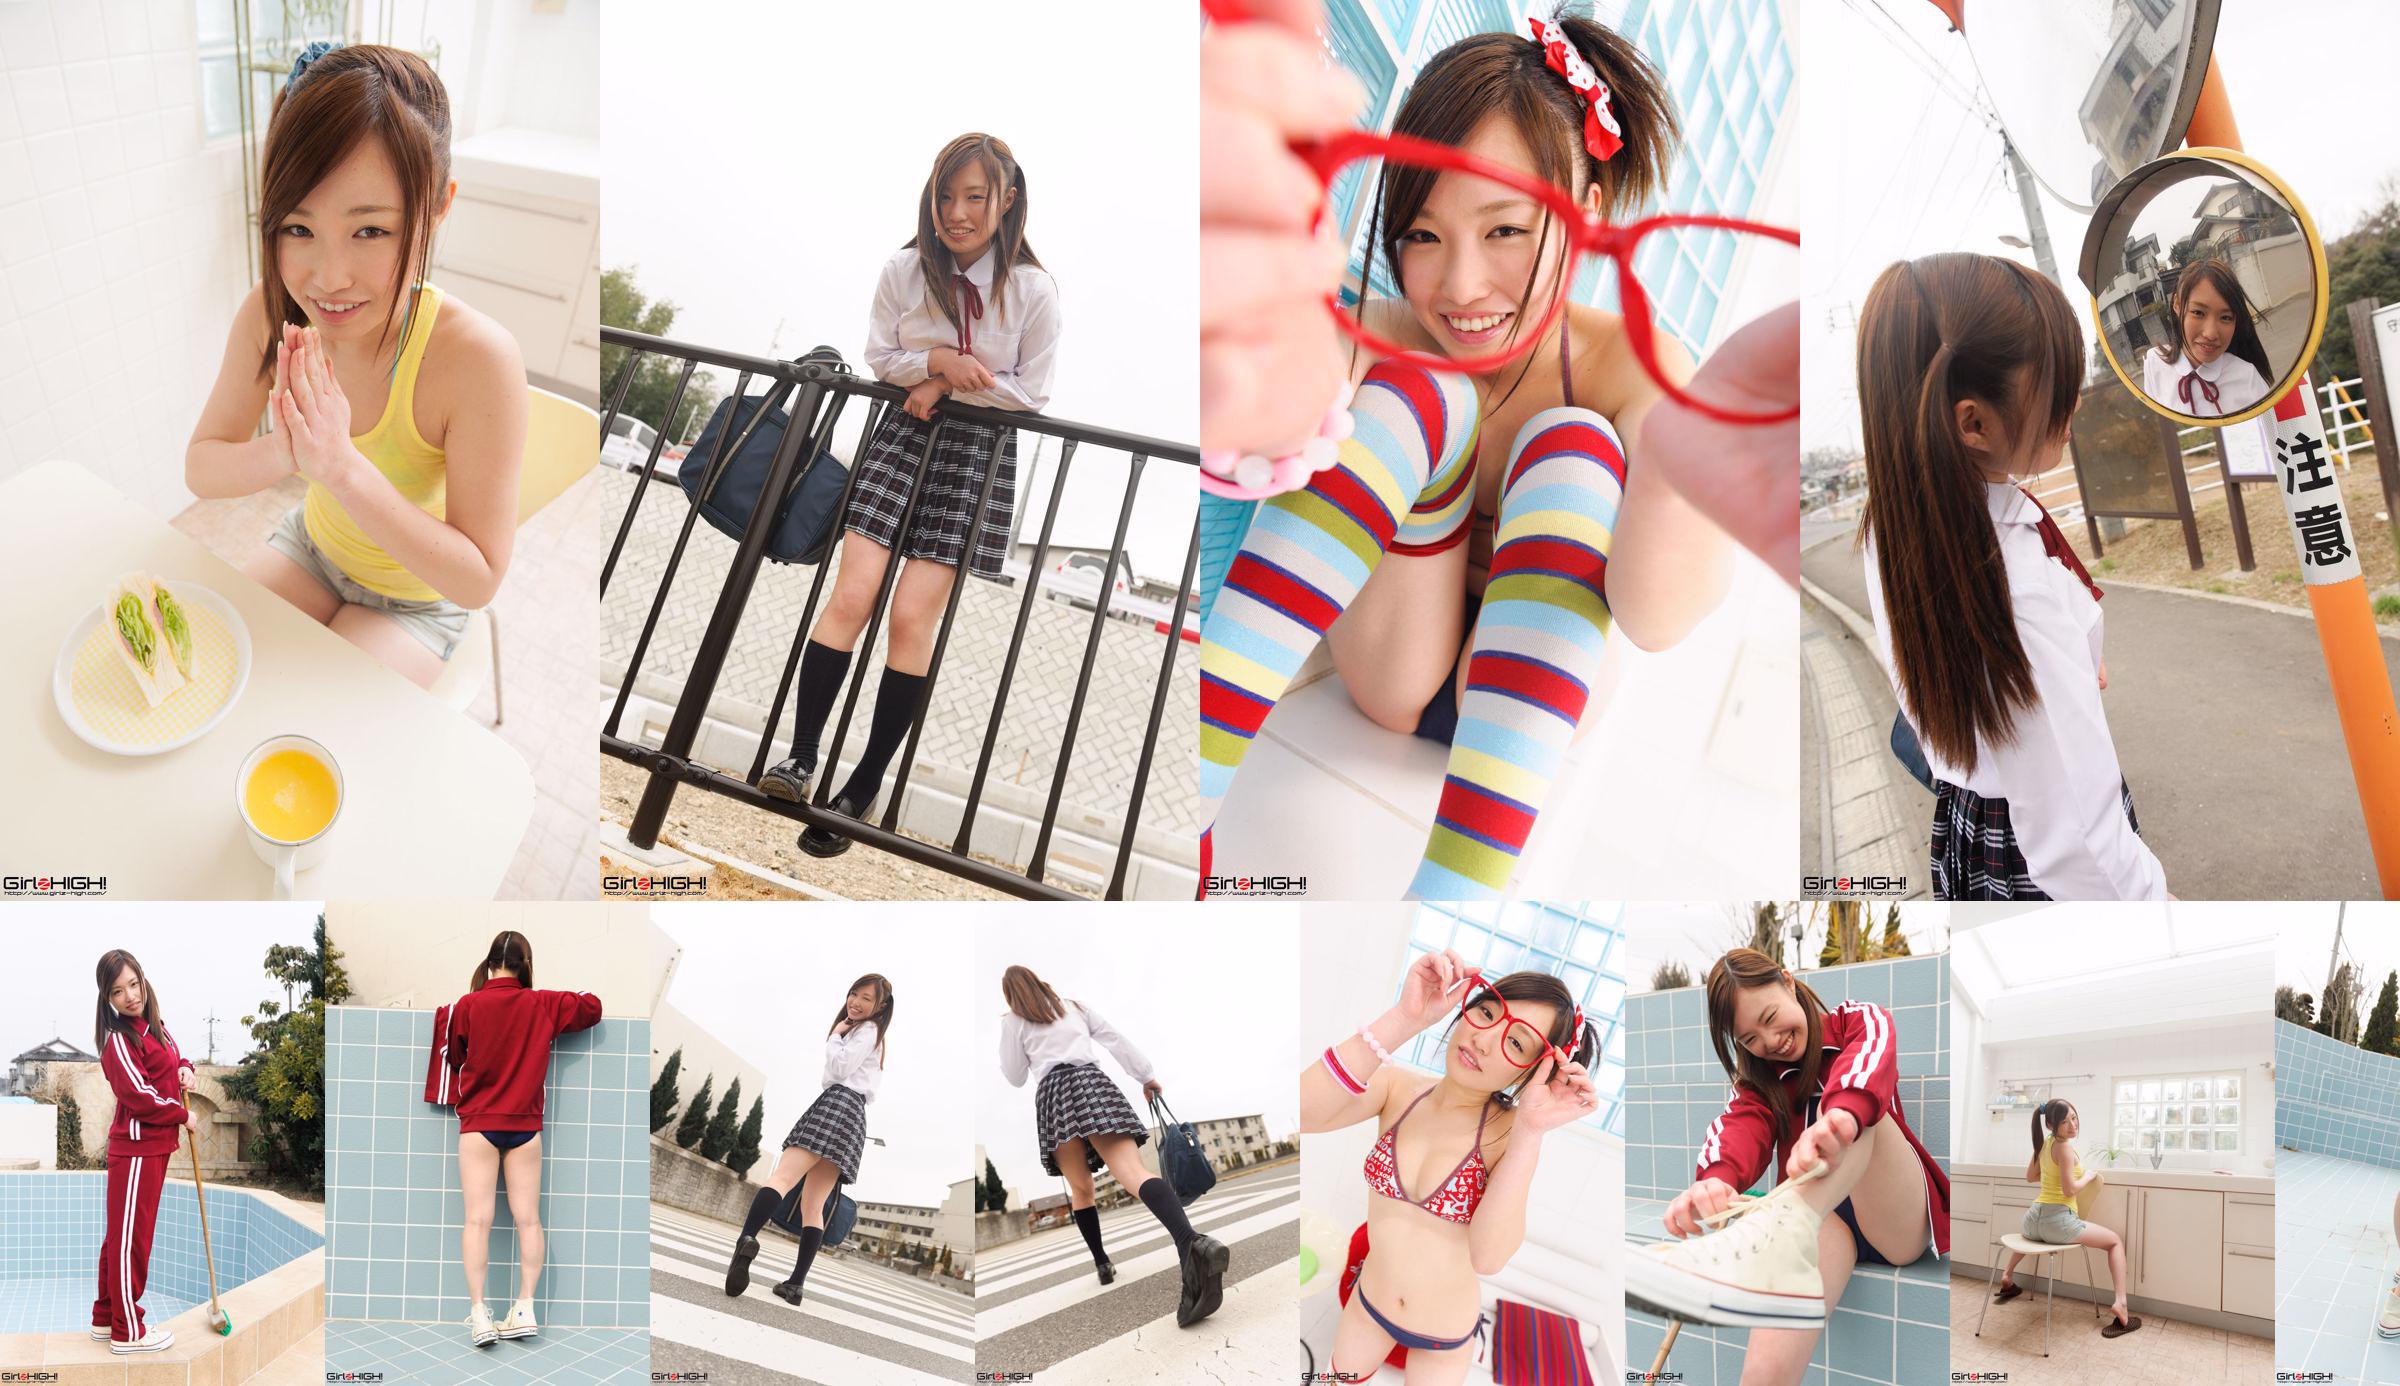 [Girlz-High] Yuno Natsuki Yuno Natsuki / Yuno Natsuki Gravure Gallery-g023 Photoset 03 No.49de40 Página 4